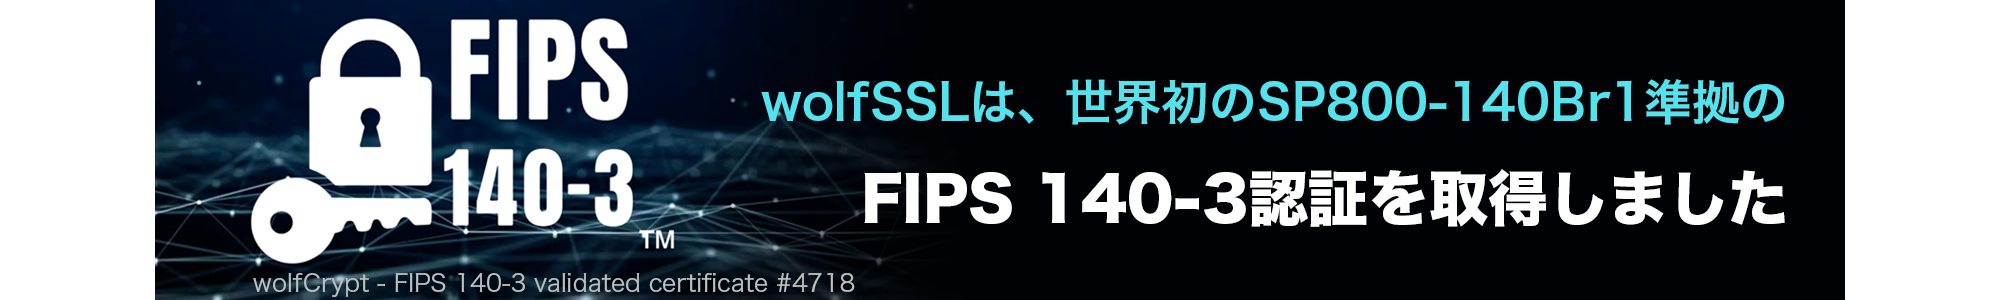 FIPS140-3__